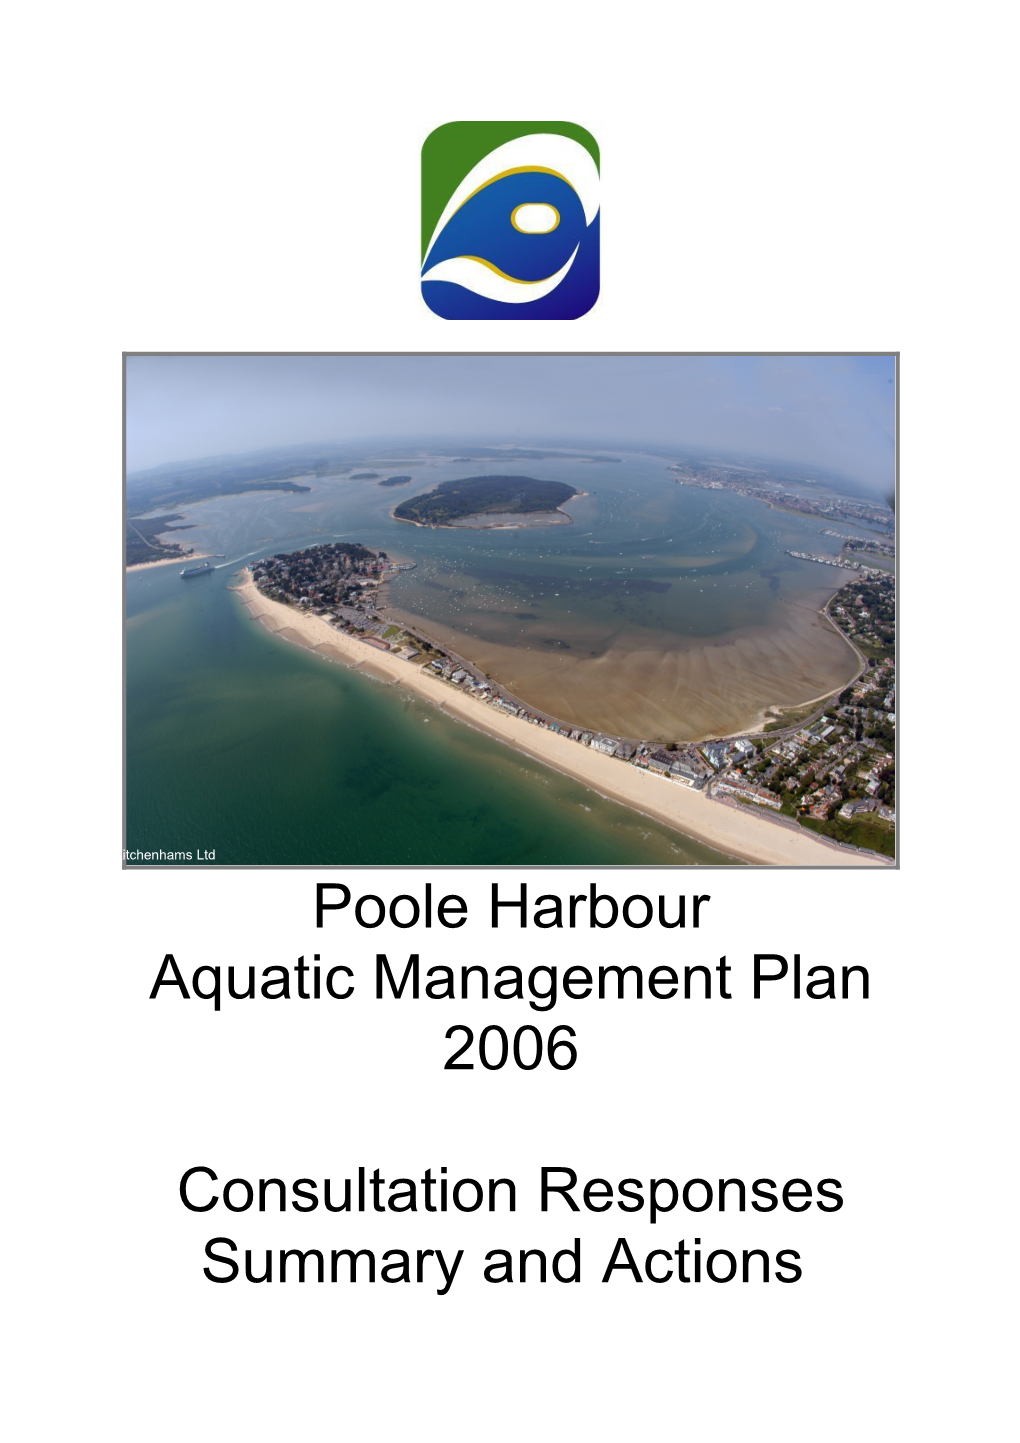 Appendix to Poole Harbour Aquatic Management Plan Adoption